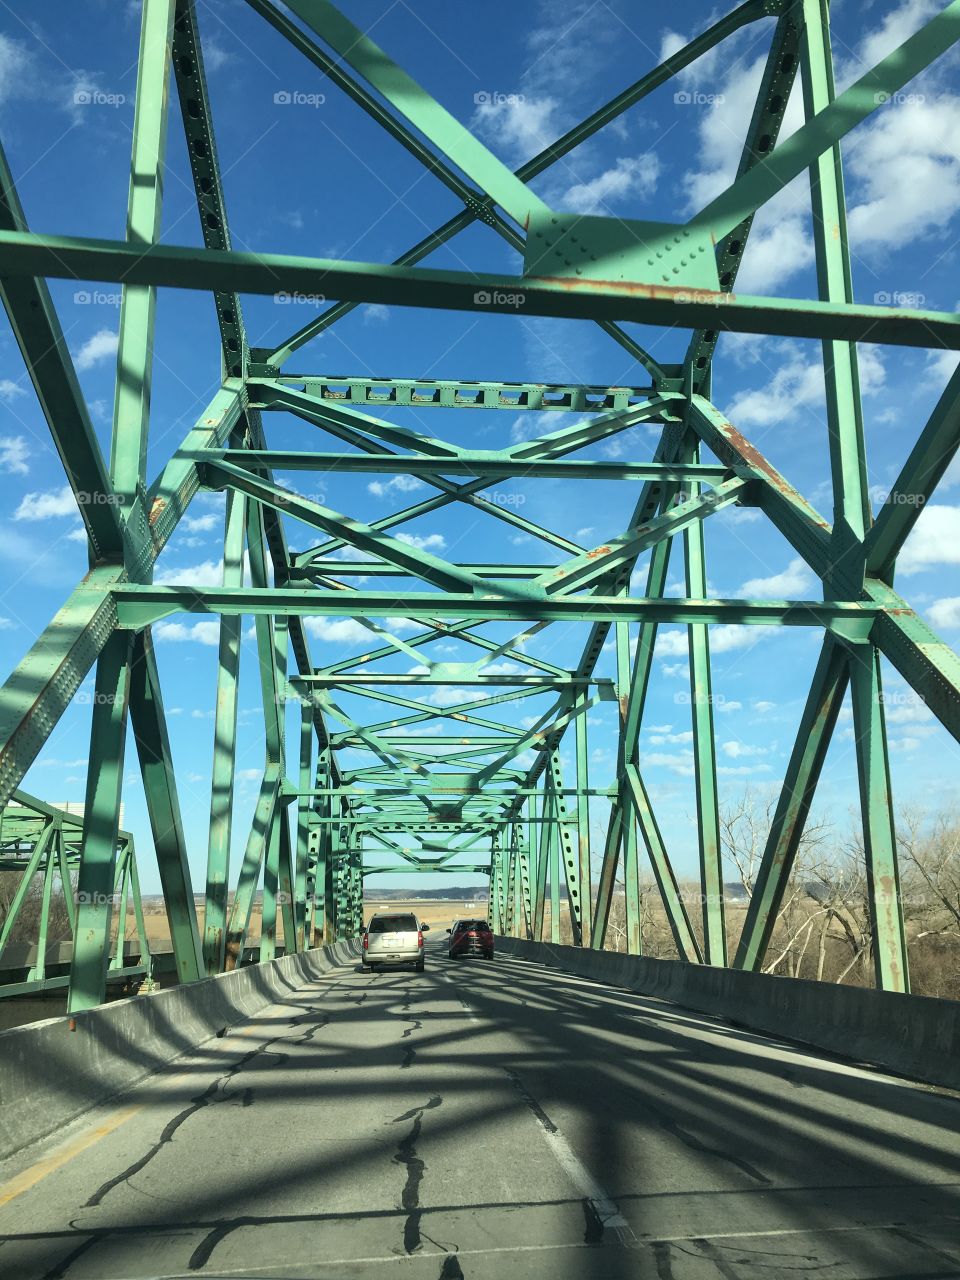 Omaha bridge